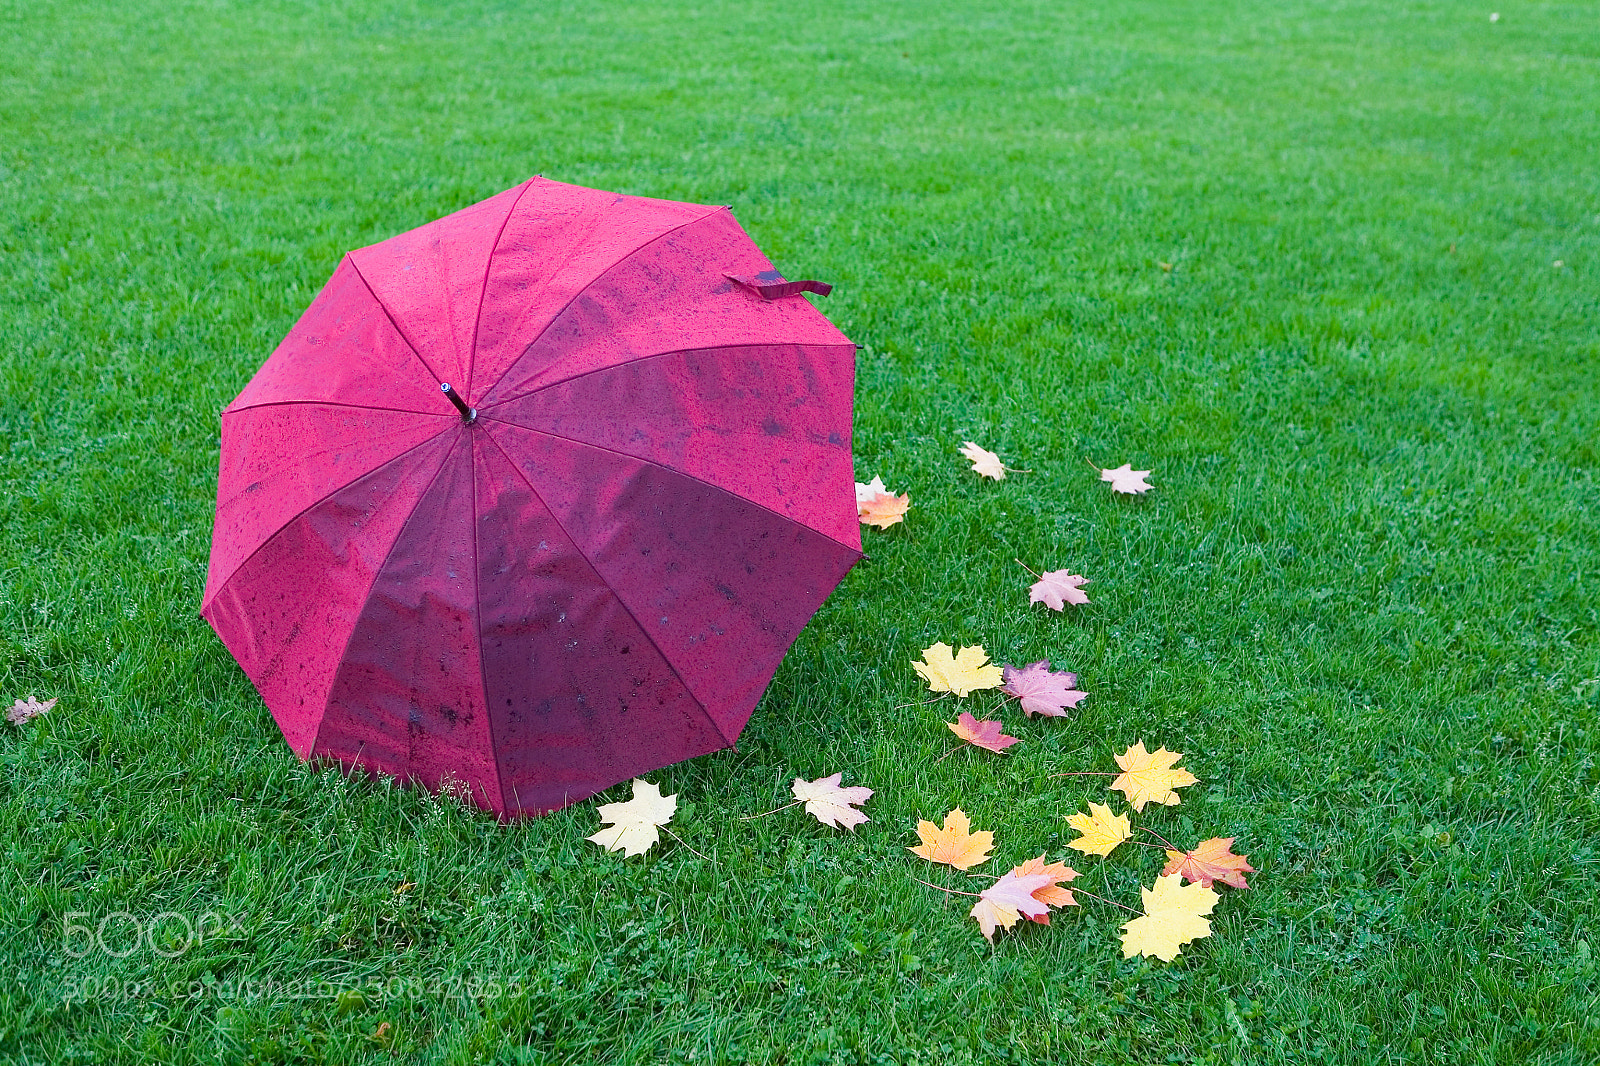 Canon EOS 5D sample photo. A wet umbrella and photography